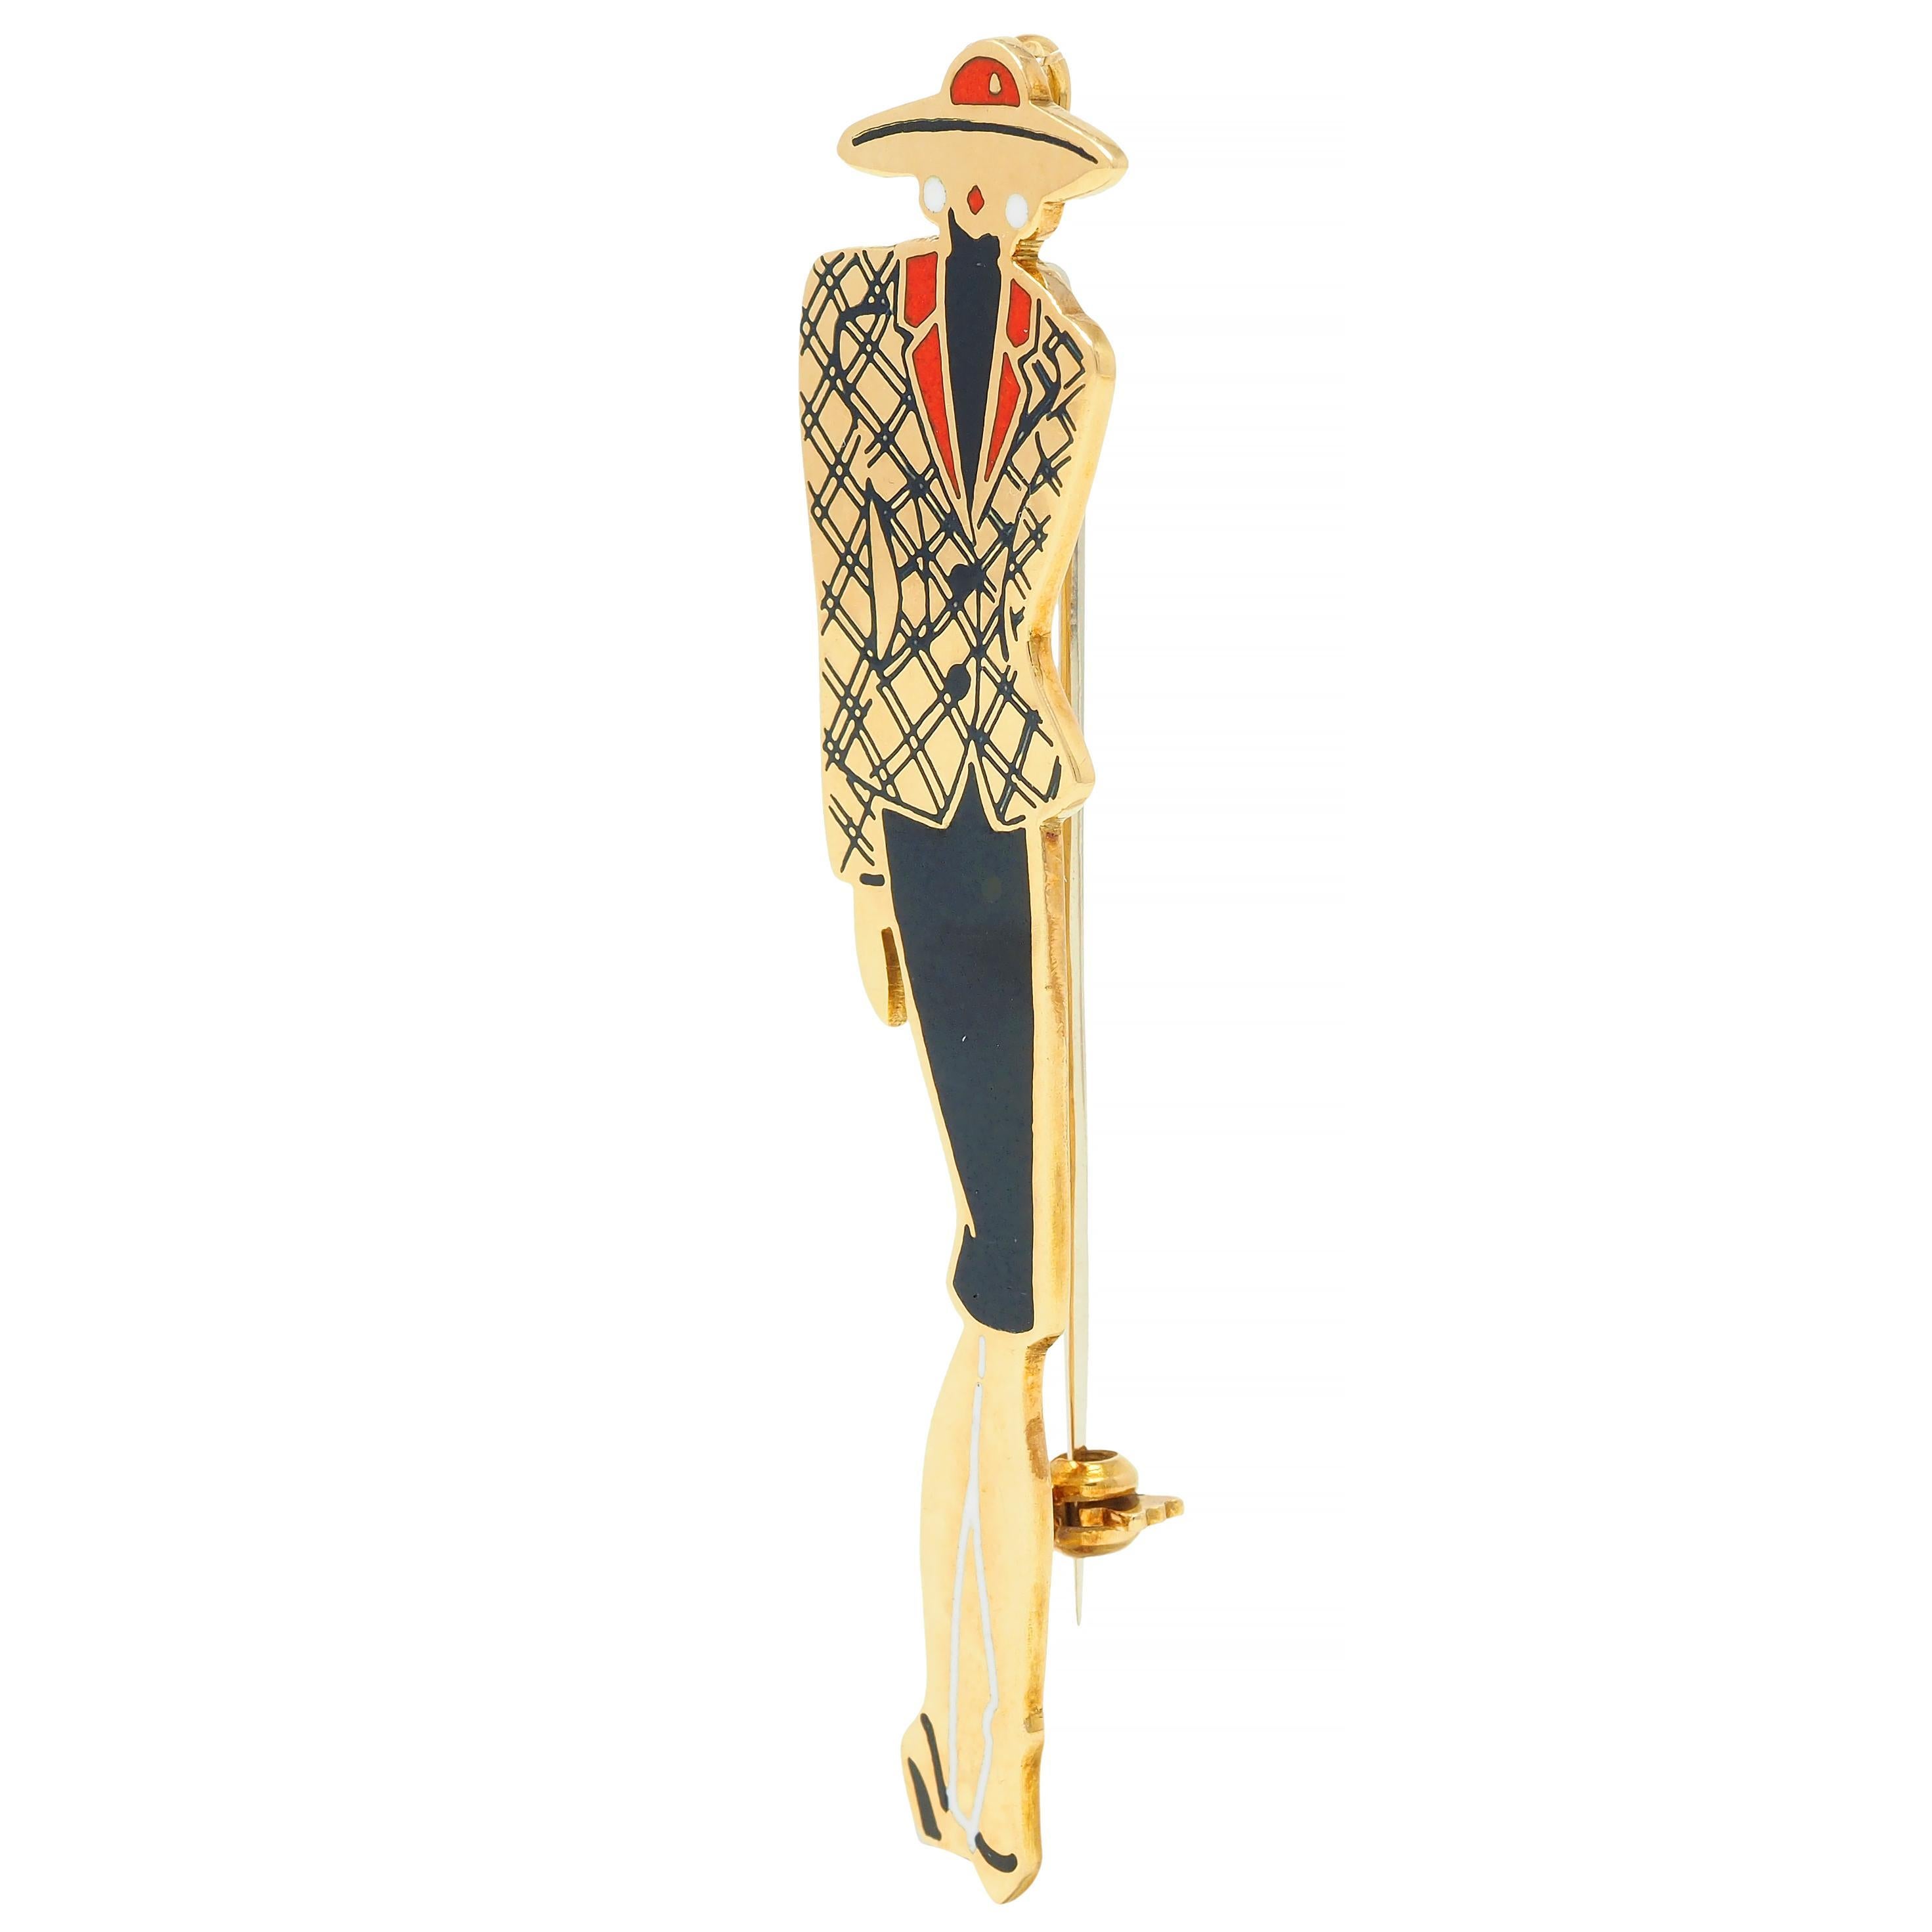 Broche en or représentant une femme élégante avec une jupe crayon, un blazer à carreaux, un chapeau large et des boucles d'oreilles. 
Décoré d'émaux graphiques - blanc brillant opaque, rouge et noir 
Pertes minimes - avec une finition polie
Complété